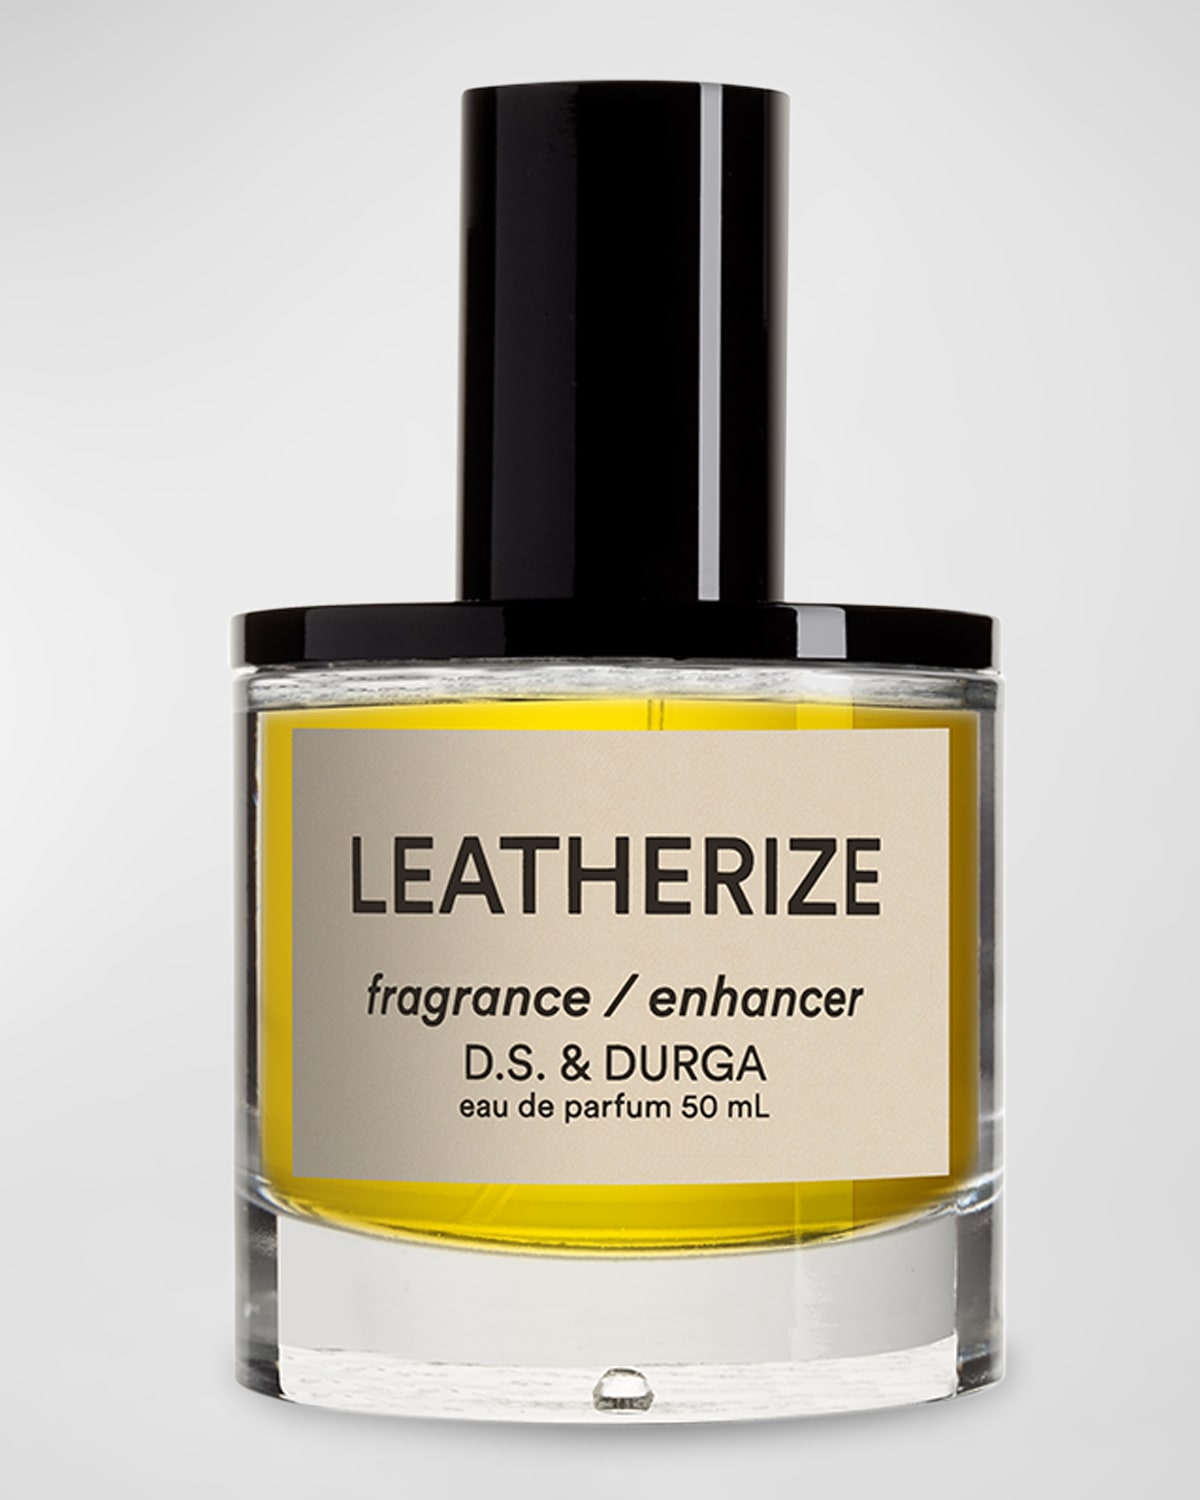 D.S. & DURGA Leatherize Eau de Parfum, 1.7 oz.